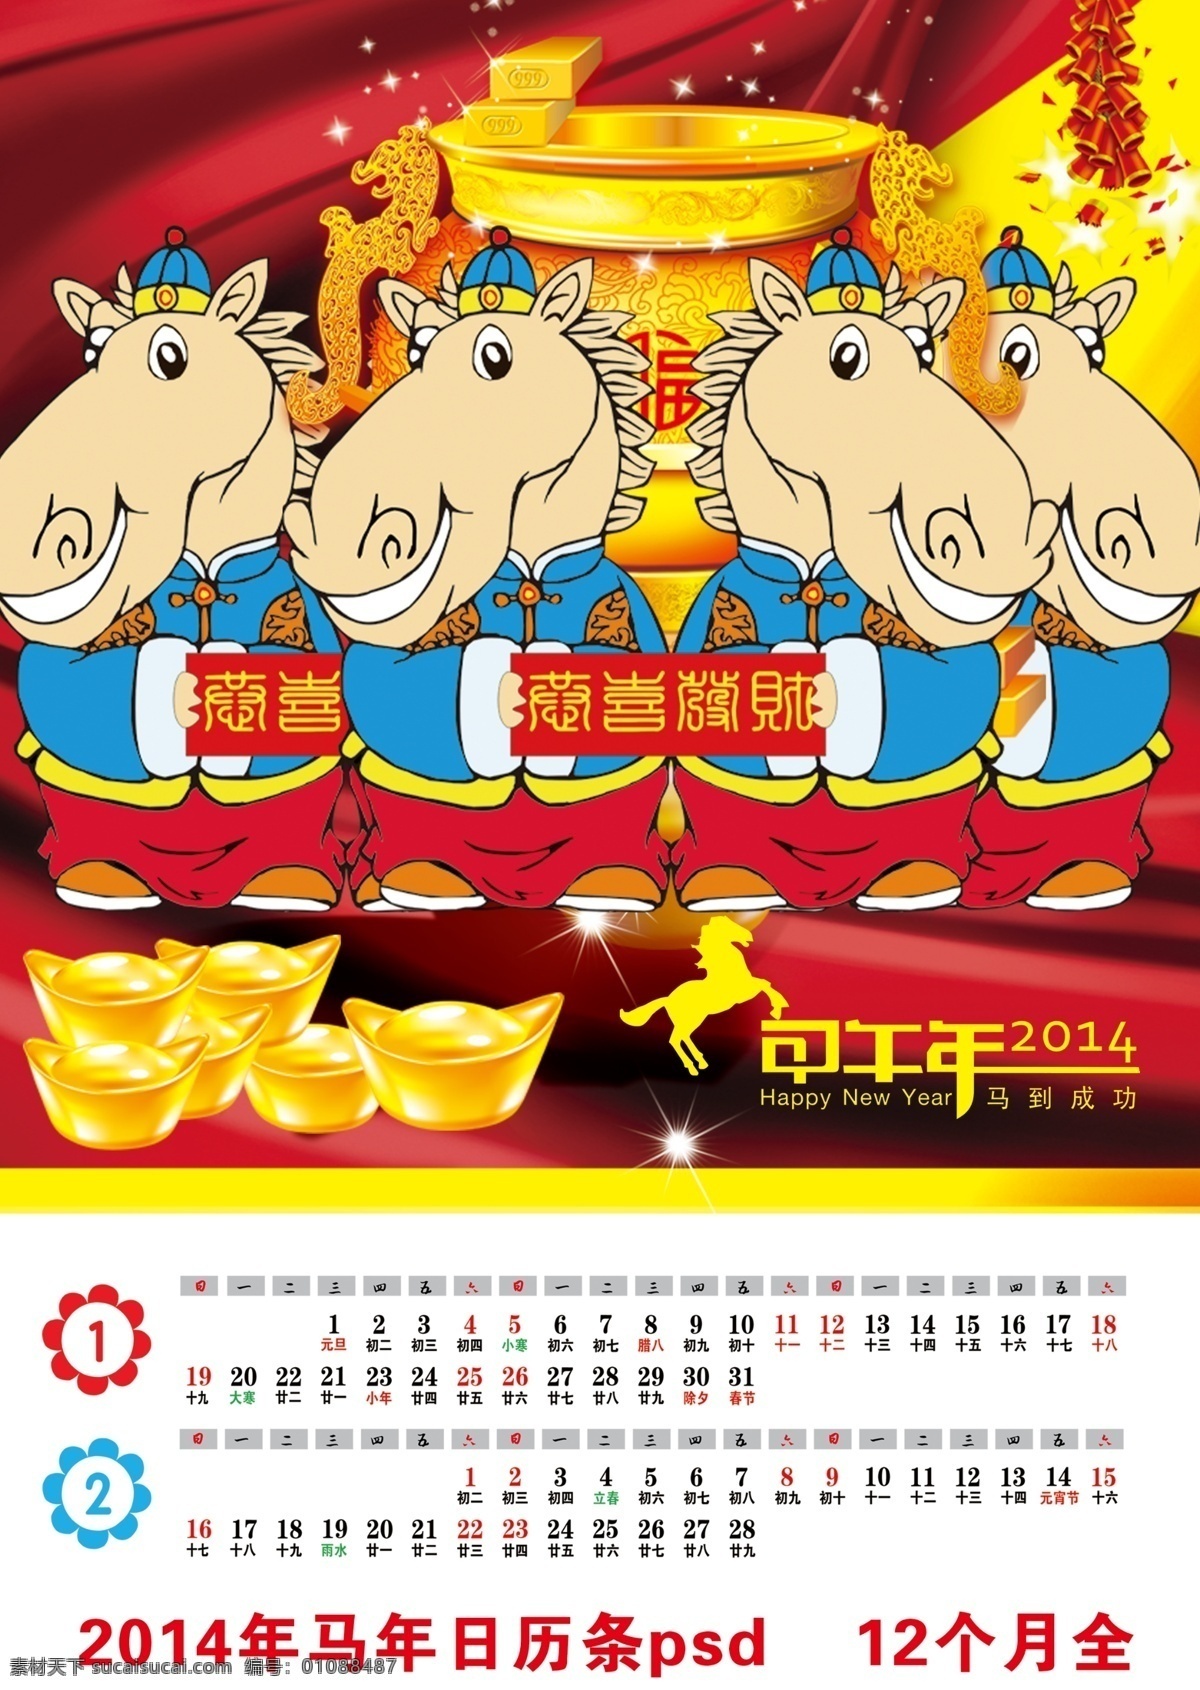 2014 年 年历 模板下载 2014年 春节 恭喜发财 节日素材 马年 马年年历 元宝 马 长条年历 12个月全 2015羊年